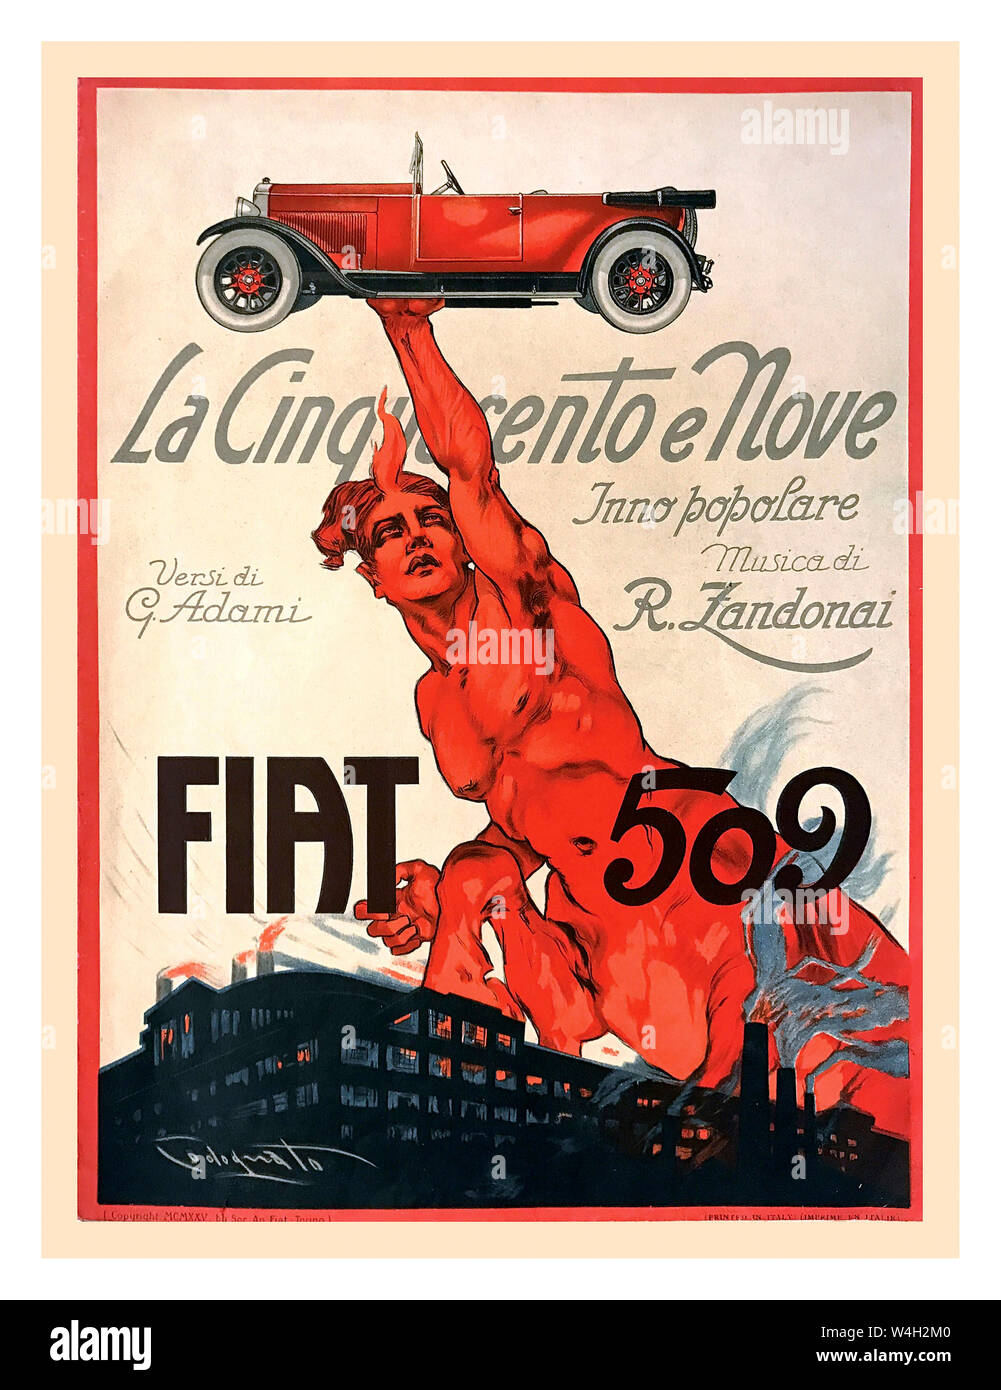 FIAT 509 Vintage 1925 Italian Car Automobile Fiat 509 Poster by Plinio Codognato ( 1878- 1940), FIAT 509 – LA CINQUECENTO E NOVE, INNO POPOLARE, MUSICA DI R.ZANDONAI, VERSI DI G.ADAMI First edition brochure, 1925 Poster by Codognato Italy Stock Photo